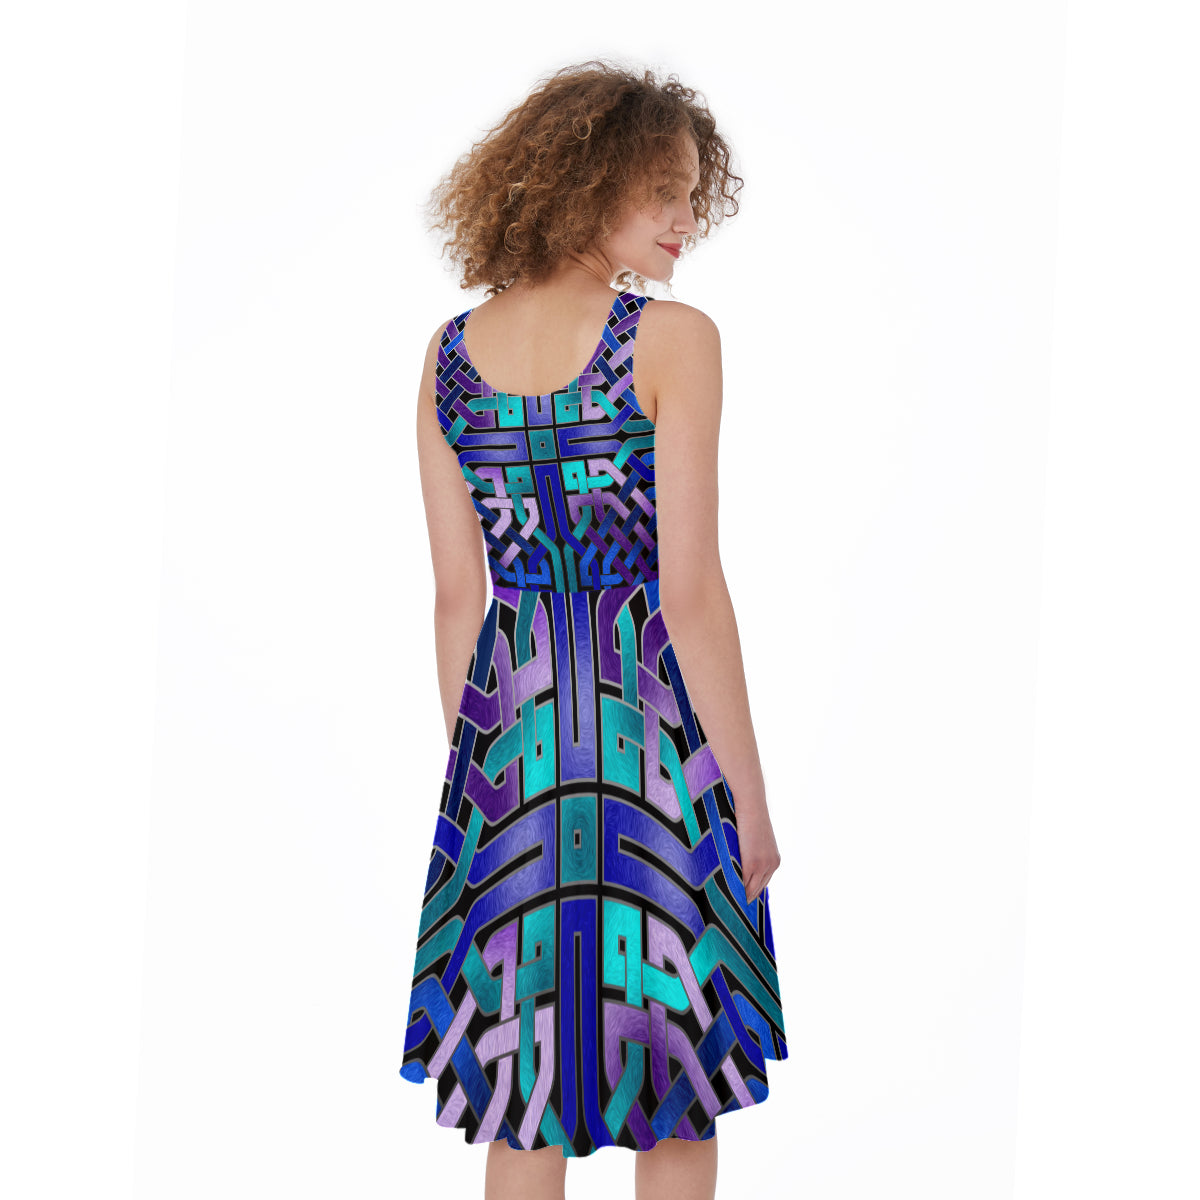 Blue Celtic Knot Sleeveless All-Over Print Women's Dress